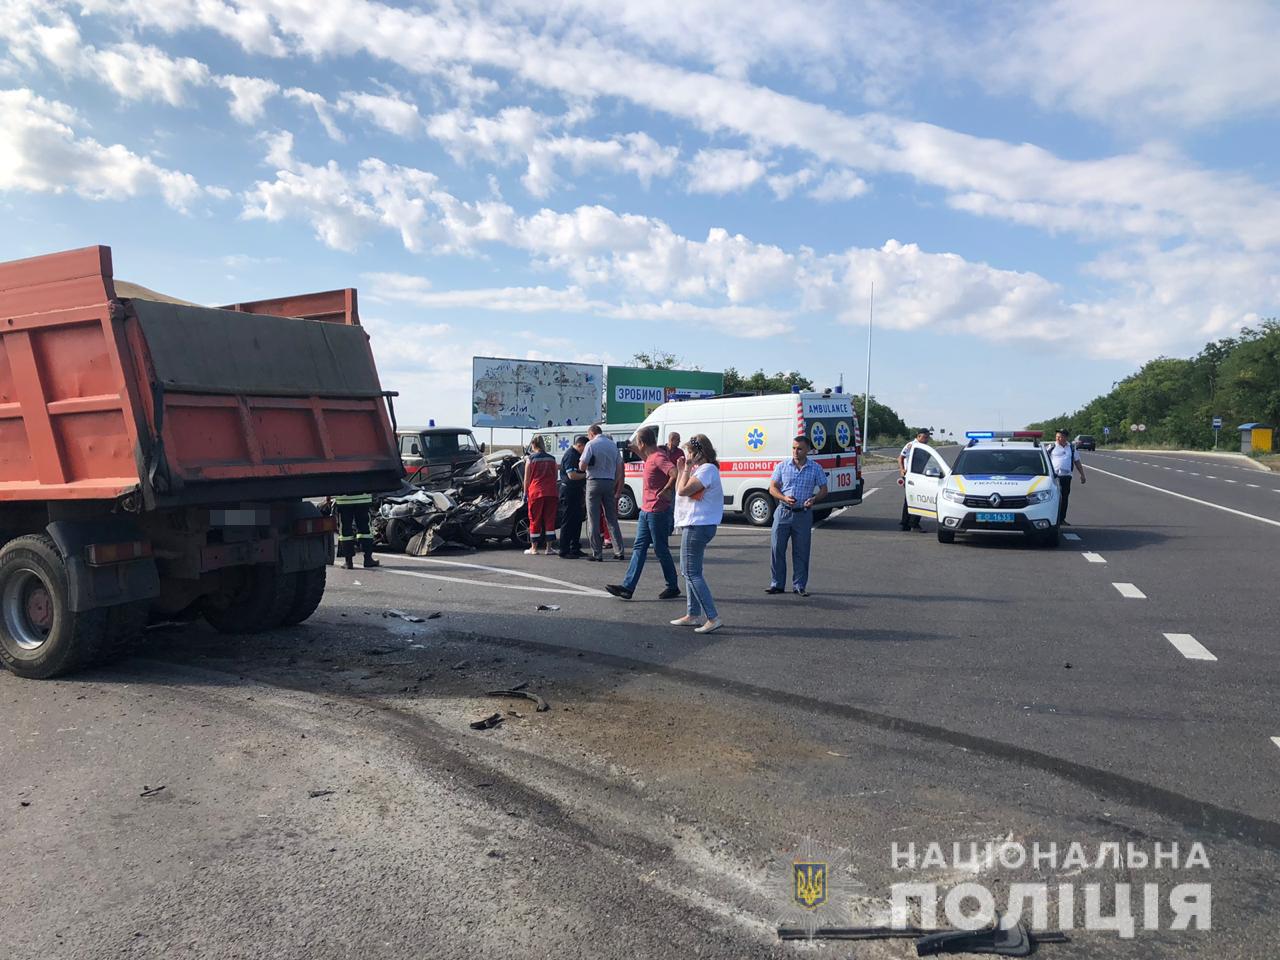 Масштабное ДТП в Одеской области: грузовик не уступил дорогу легковушке, четверо погибших. Фото: Нацполиция Одесской области